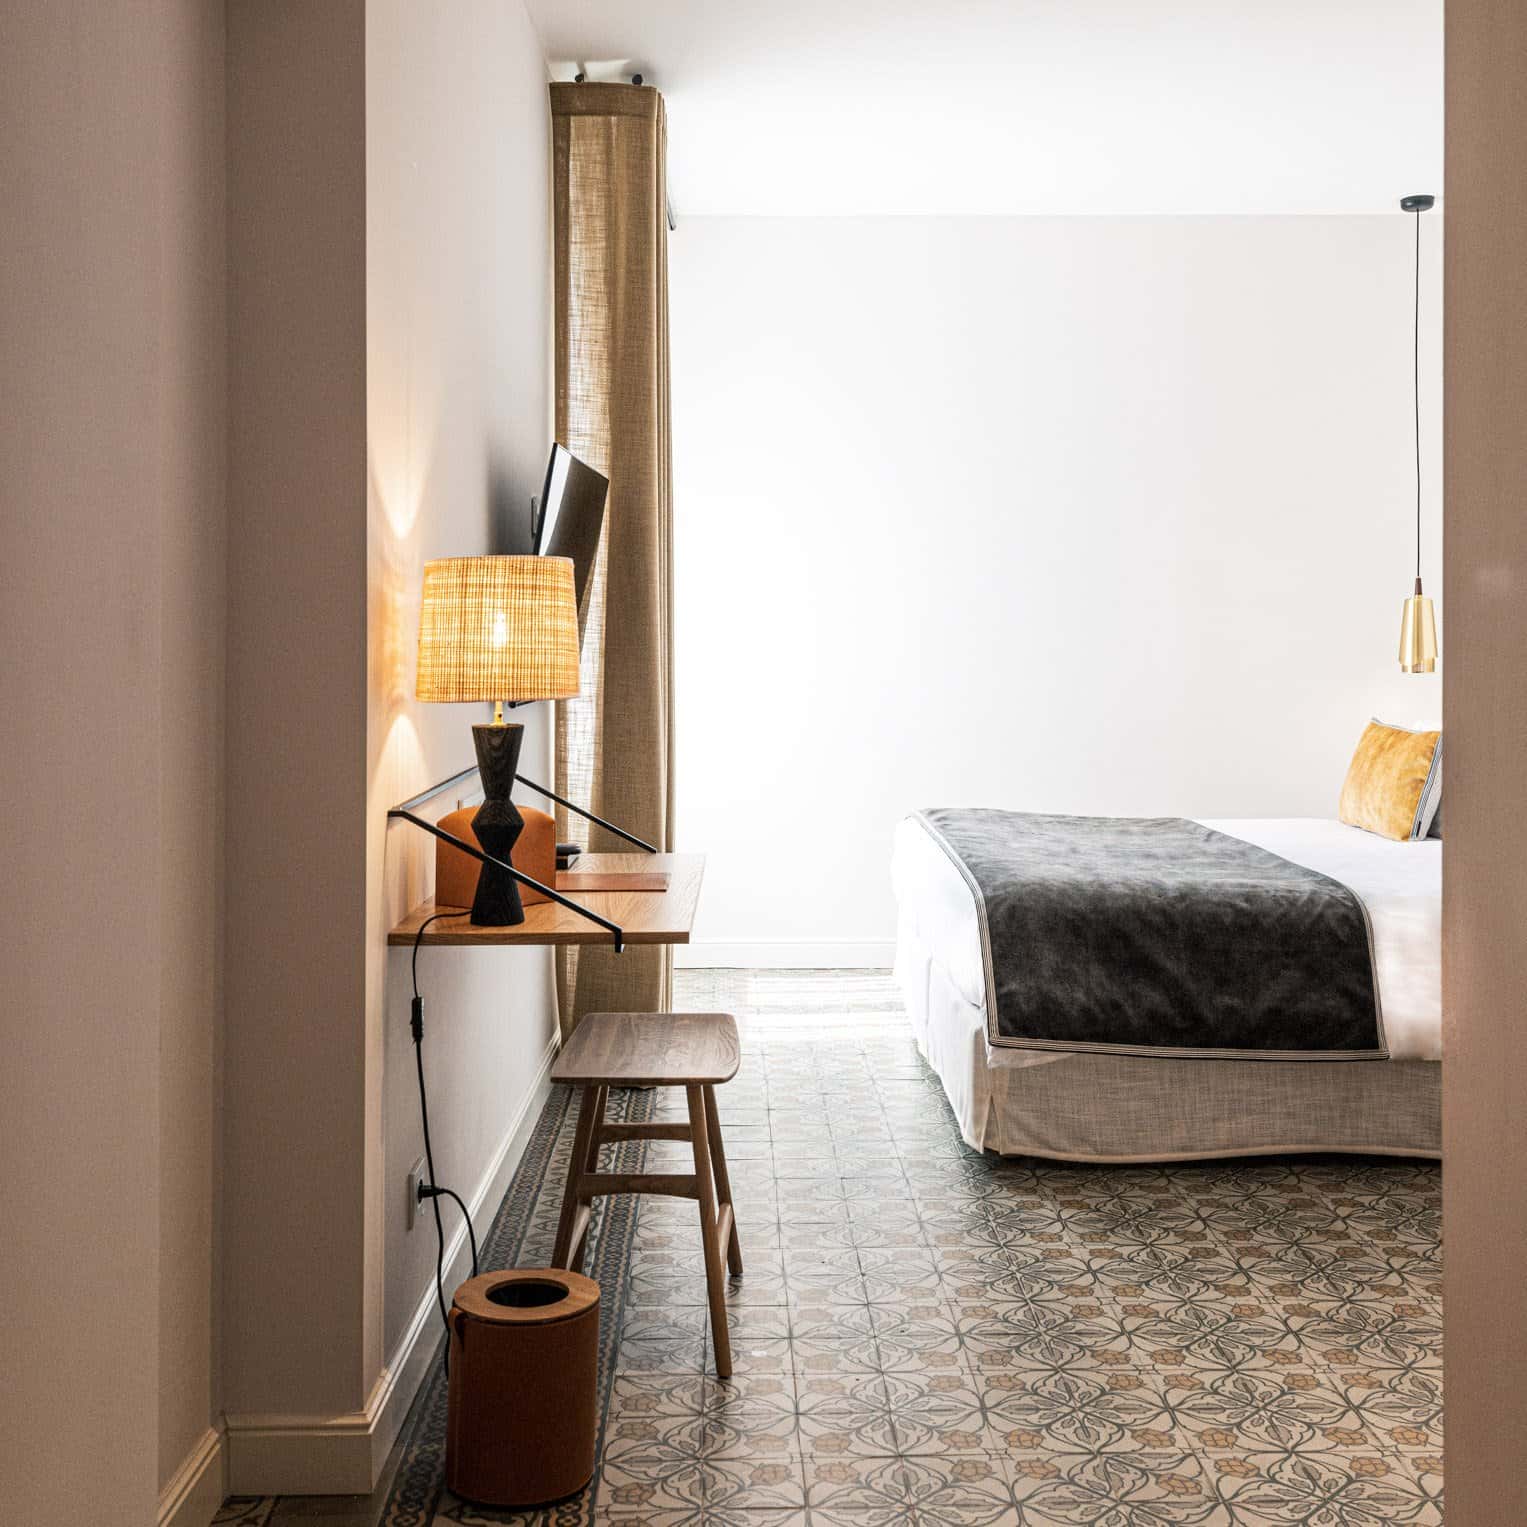 Bureau et lit avec vue extérieure, chambre PMR double confort à Hôtel Le Mosaïque Narbonne.